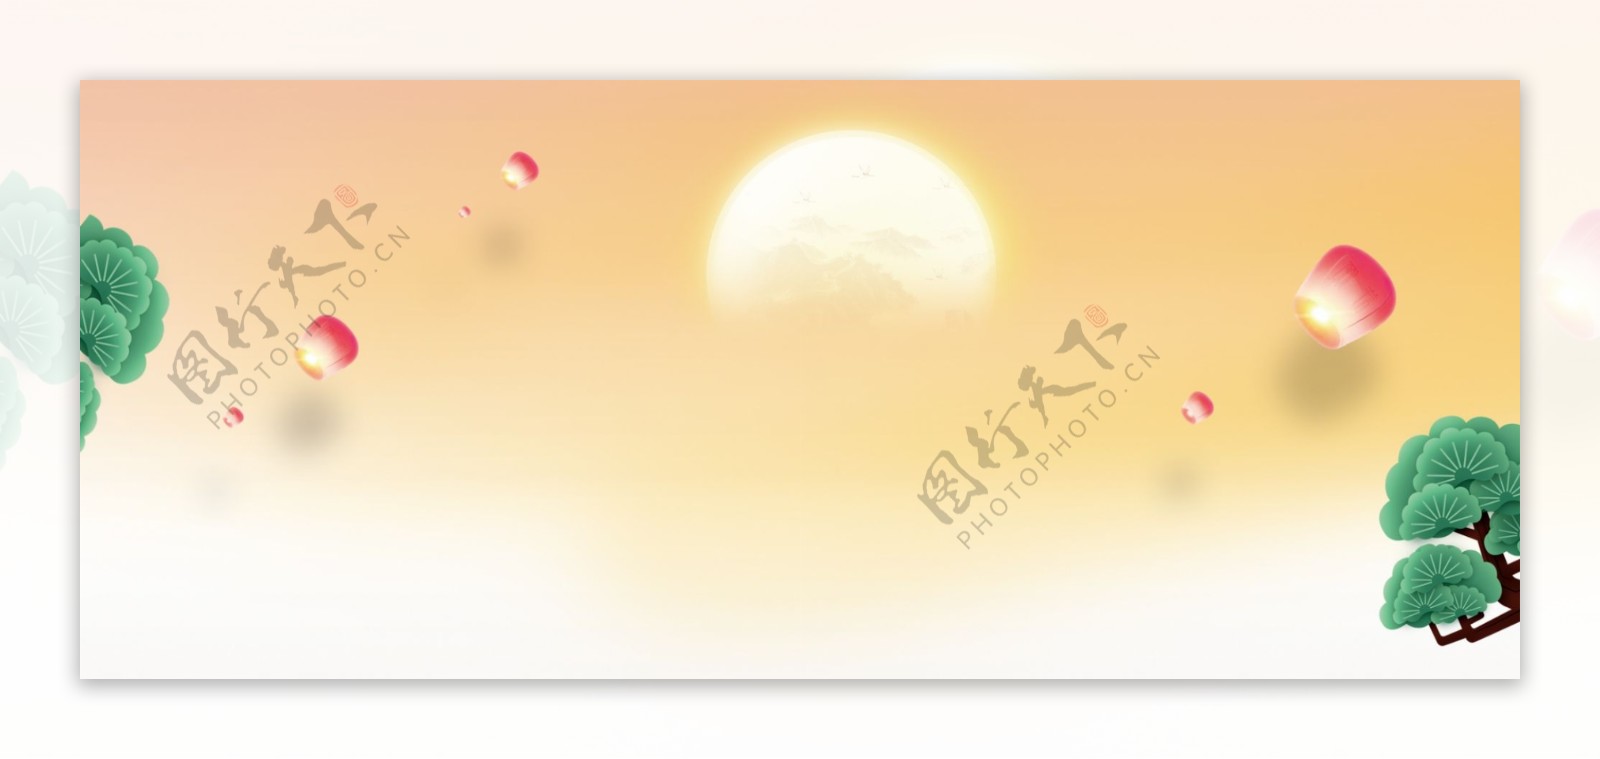 元宵佳节banner